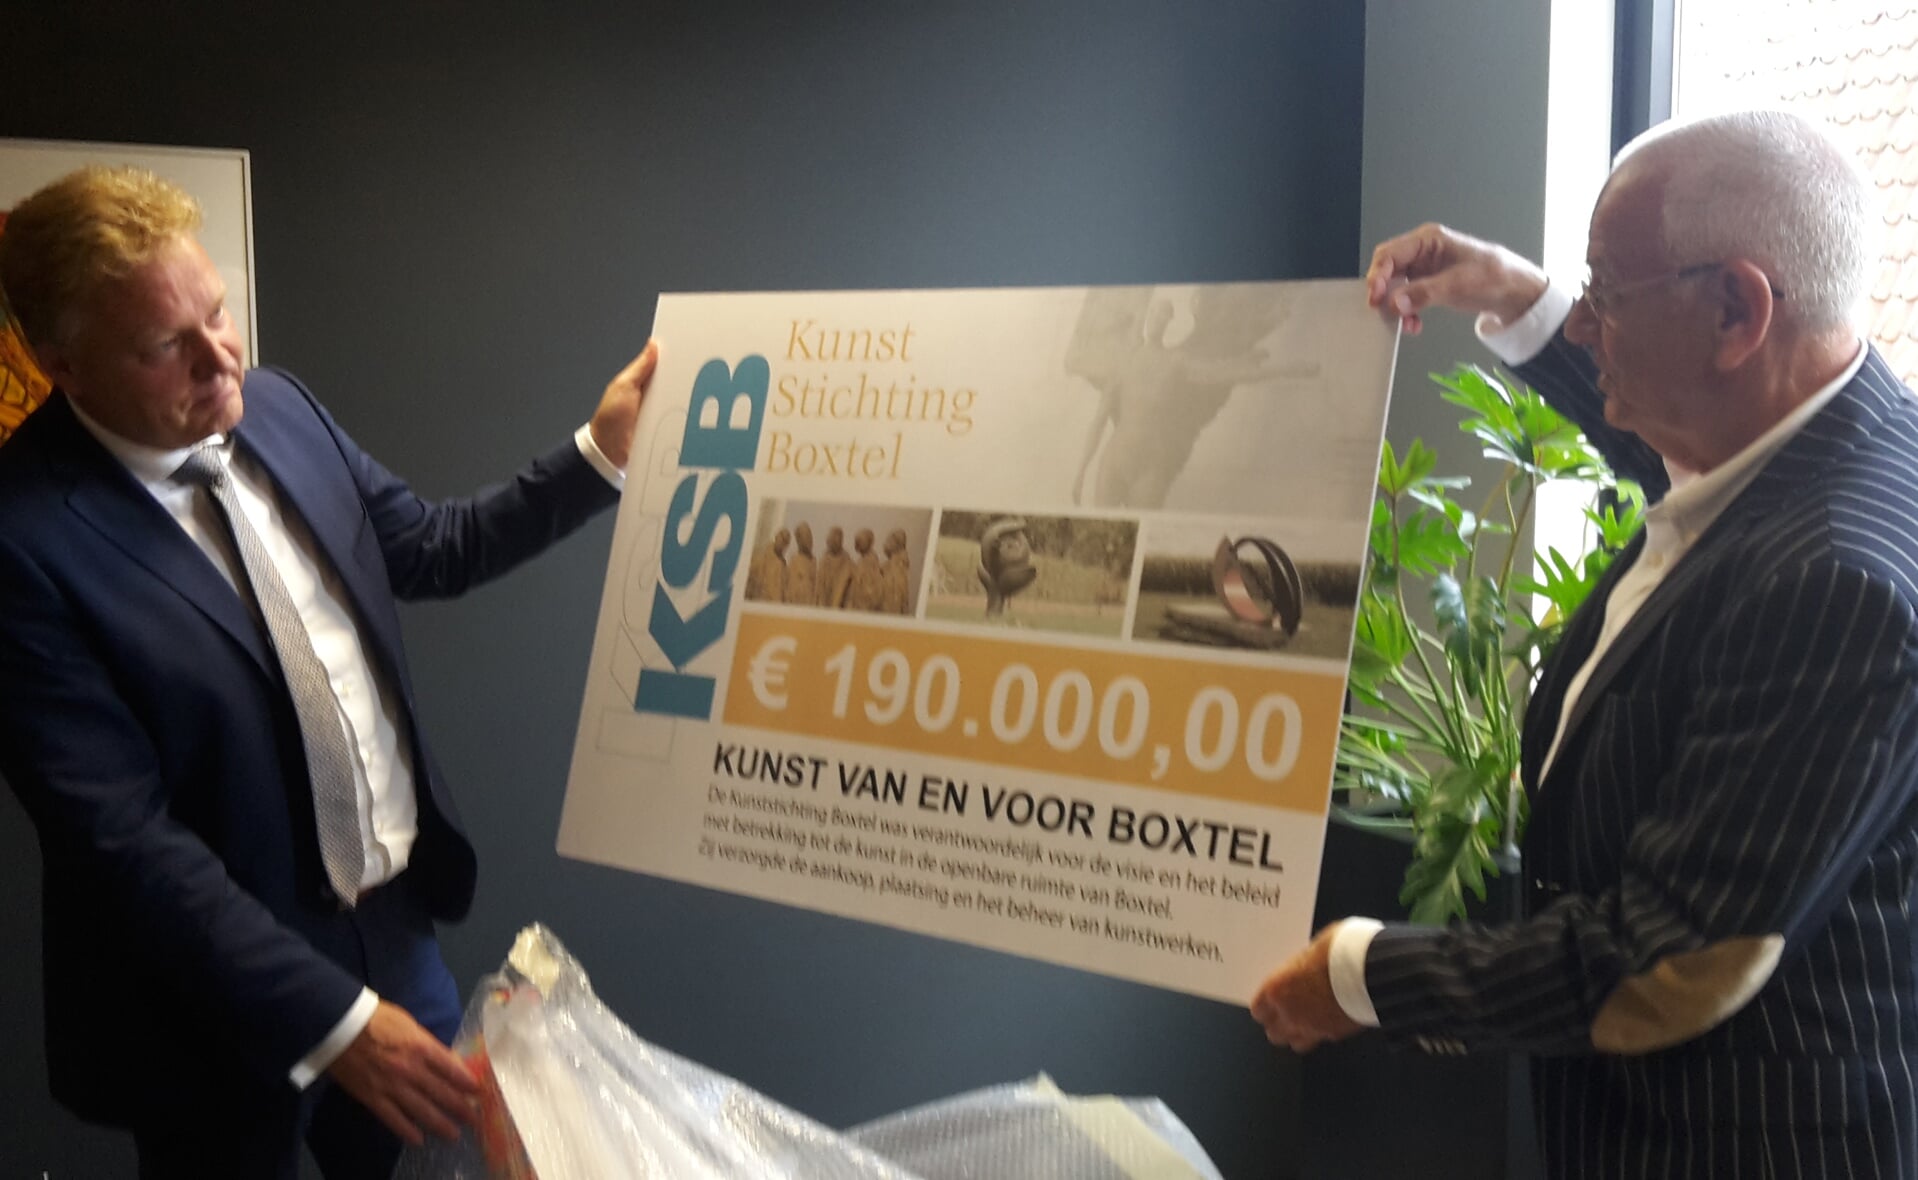 Voorzitter Gerard Schraverus (rechts) van de Kunst Stichting Boxtel overhandigde de cheque woensdagochtend aan burgemeester Mark Buijs. (Foto: Henk van Weert).